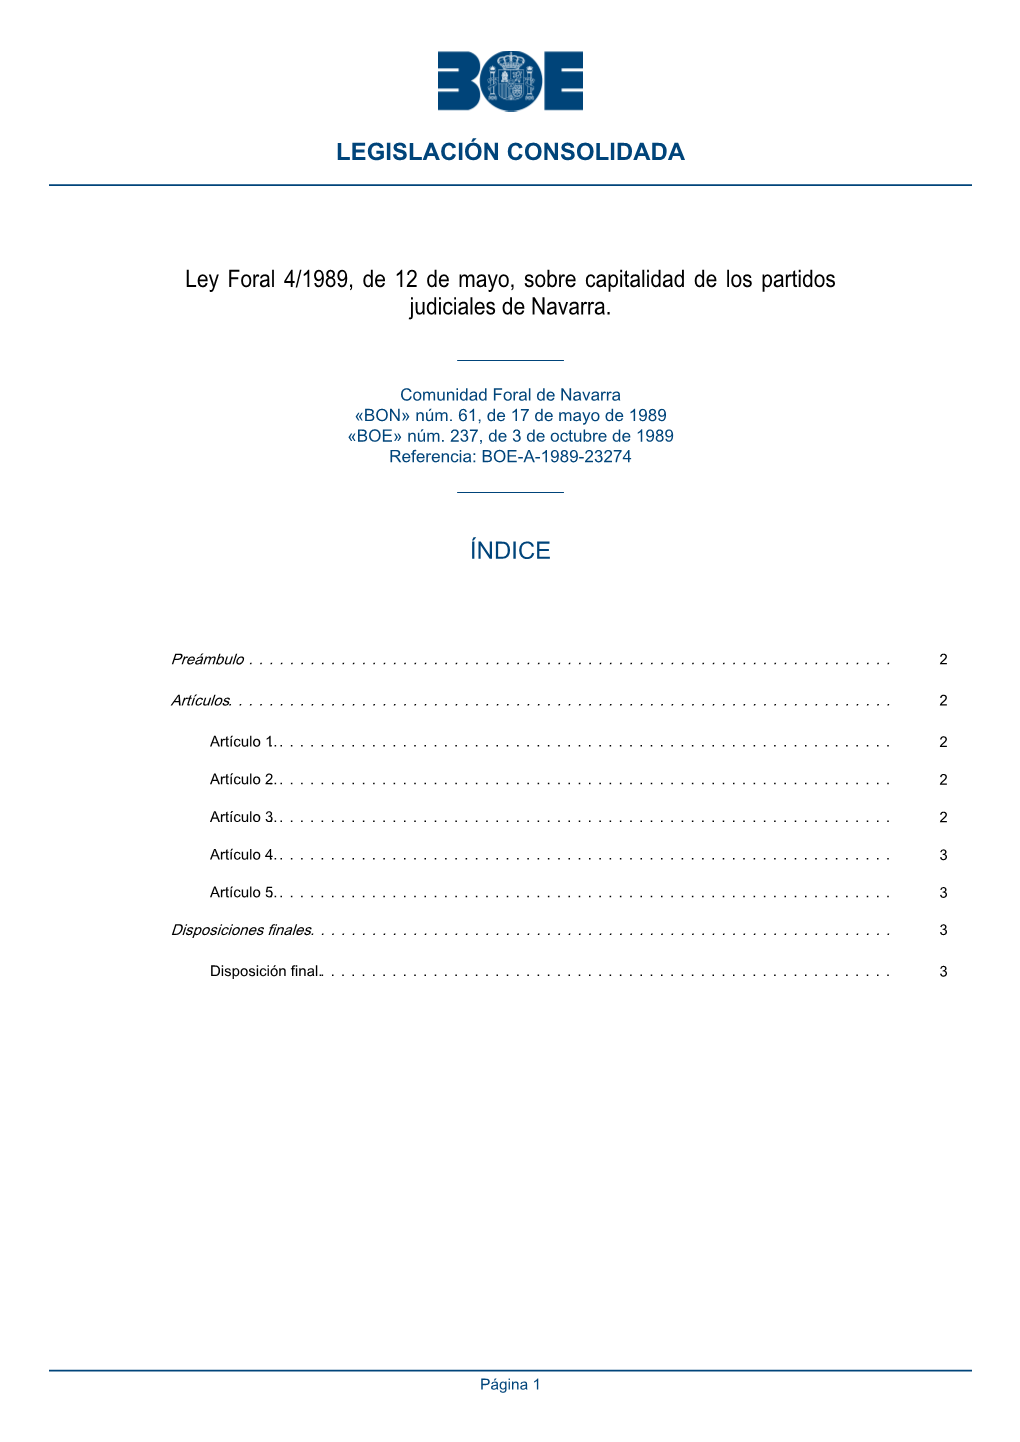 Ley Foral 4/1989, De 12 De Mayo, Sobre Capitalidad De Los Partidos Judiciales De Navarra